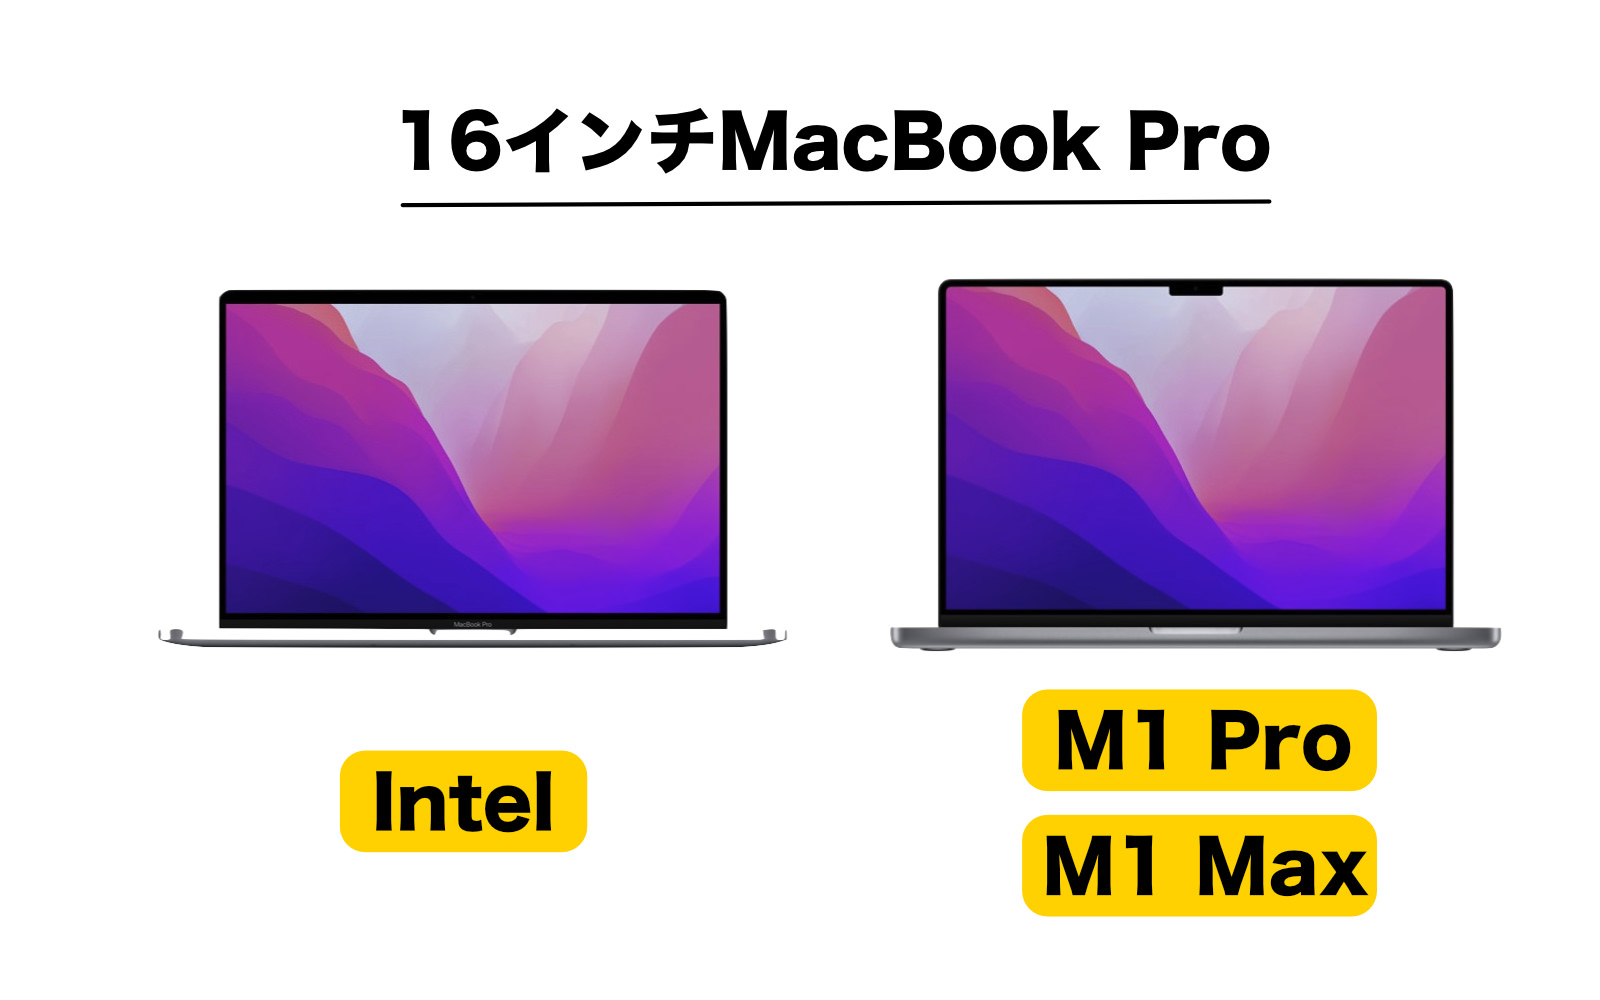 超特価激安  M1pro 16インチ pro 『美品』MacBook ノートPC